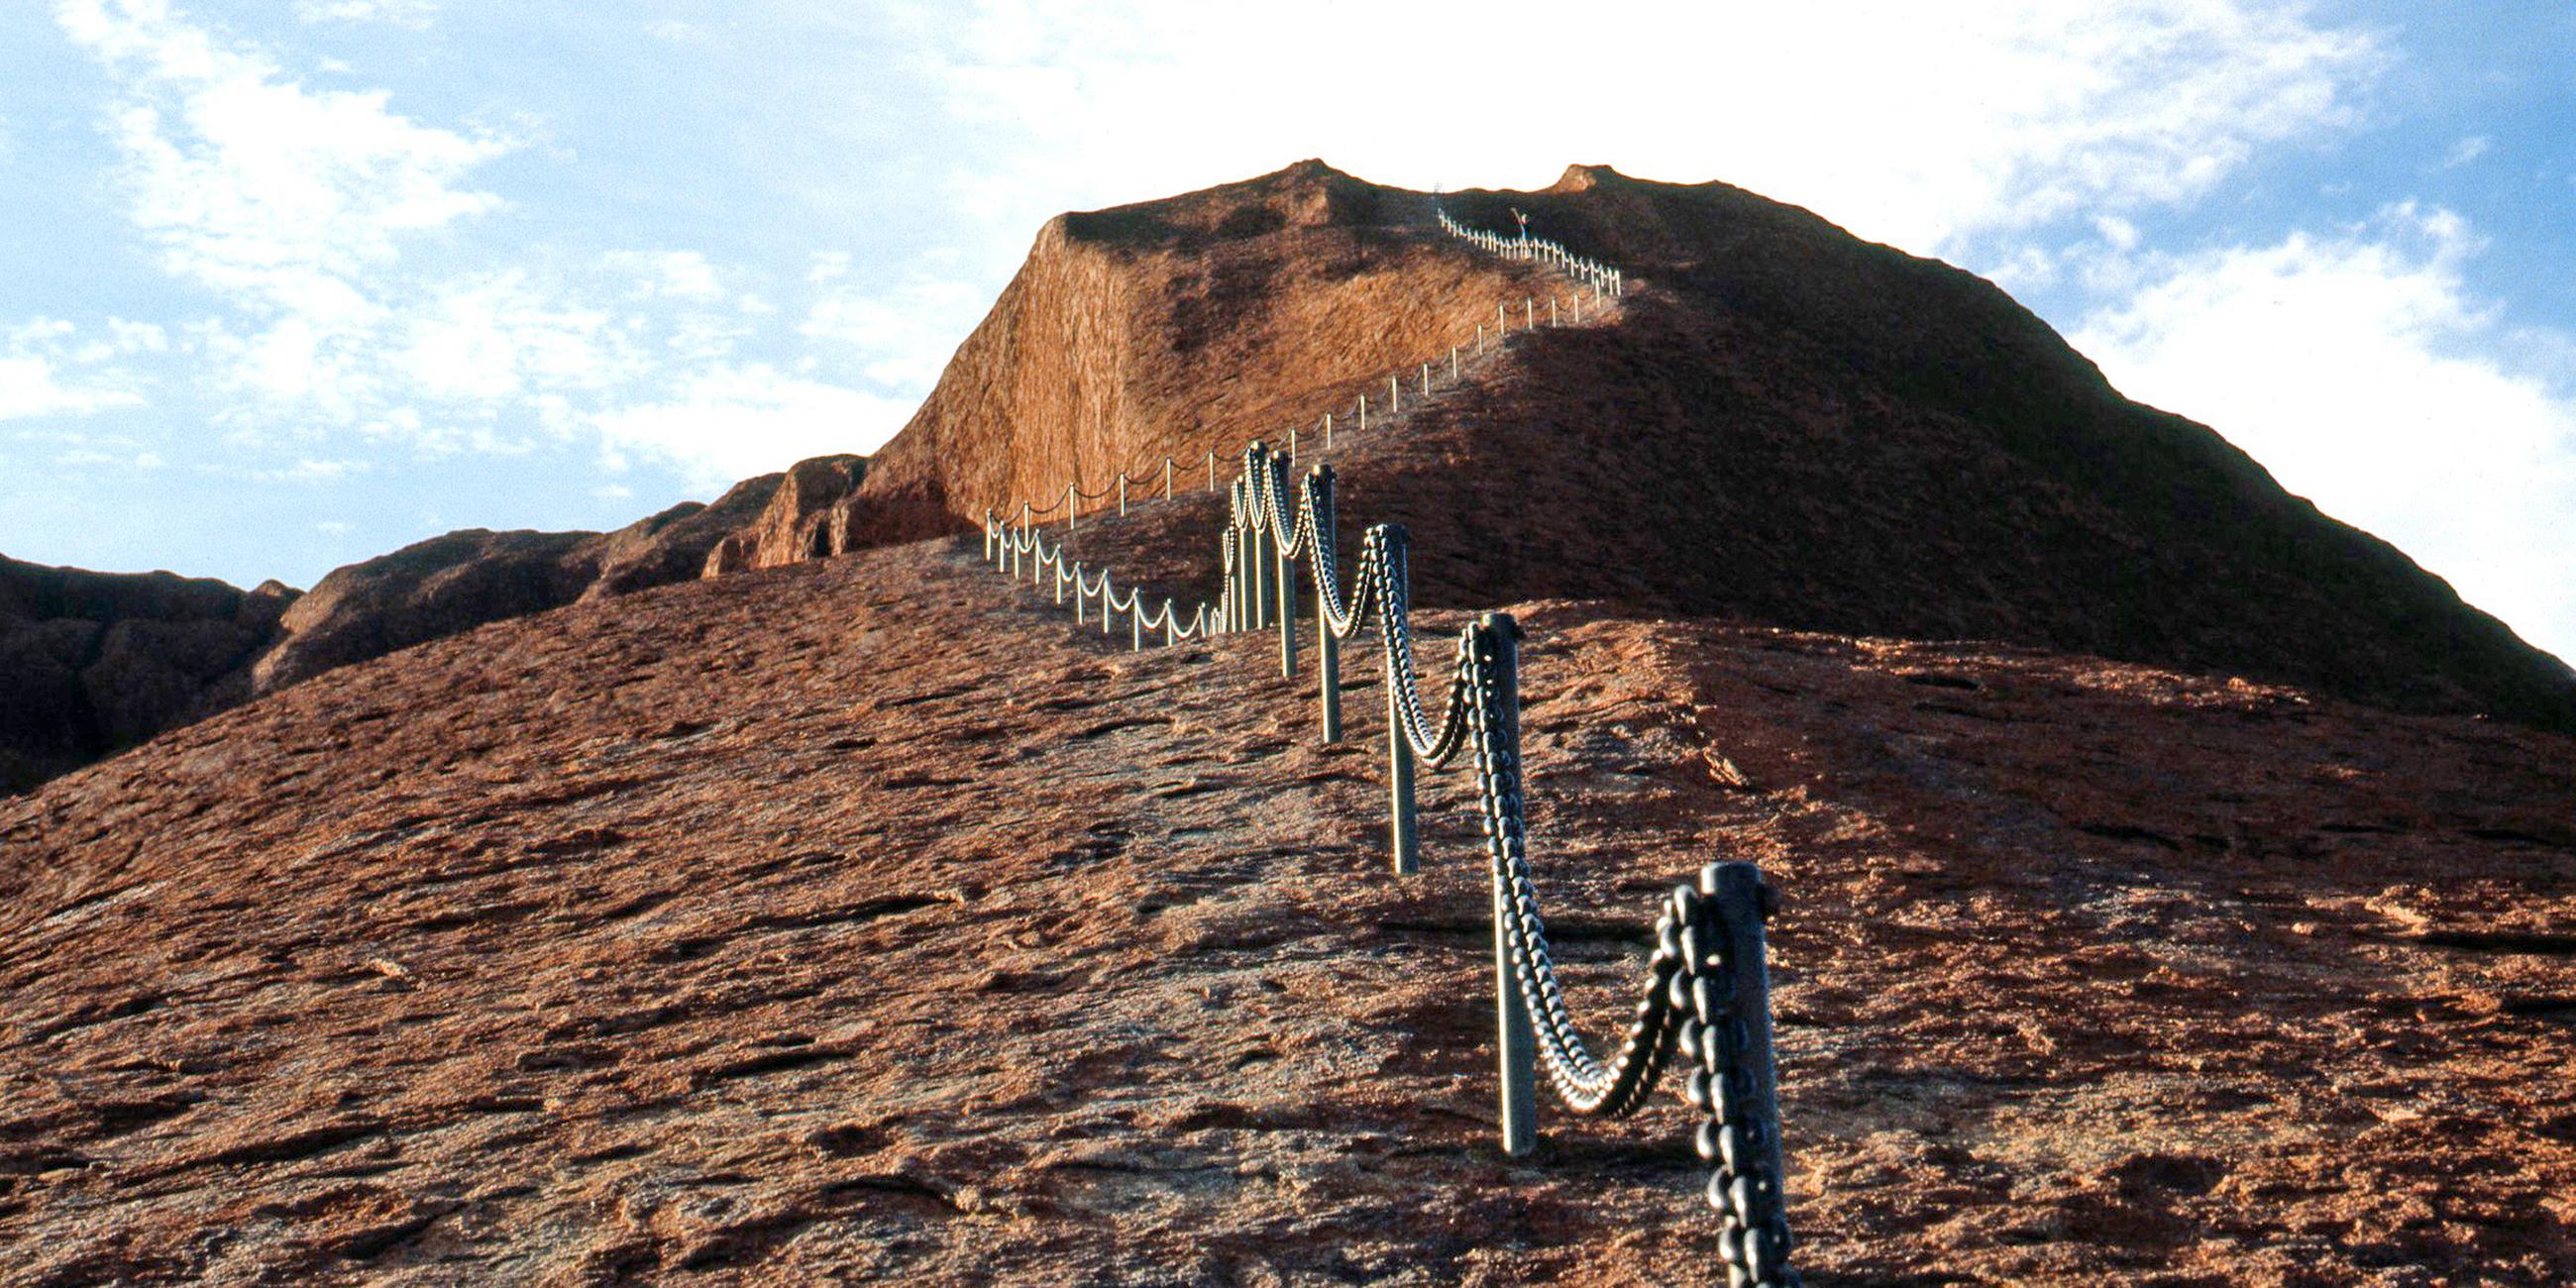 Kletterhilfen auf dem Uluru machen den Aufstieg für Touristen einfacher